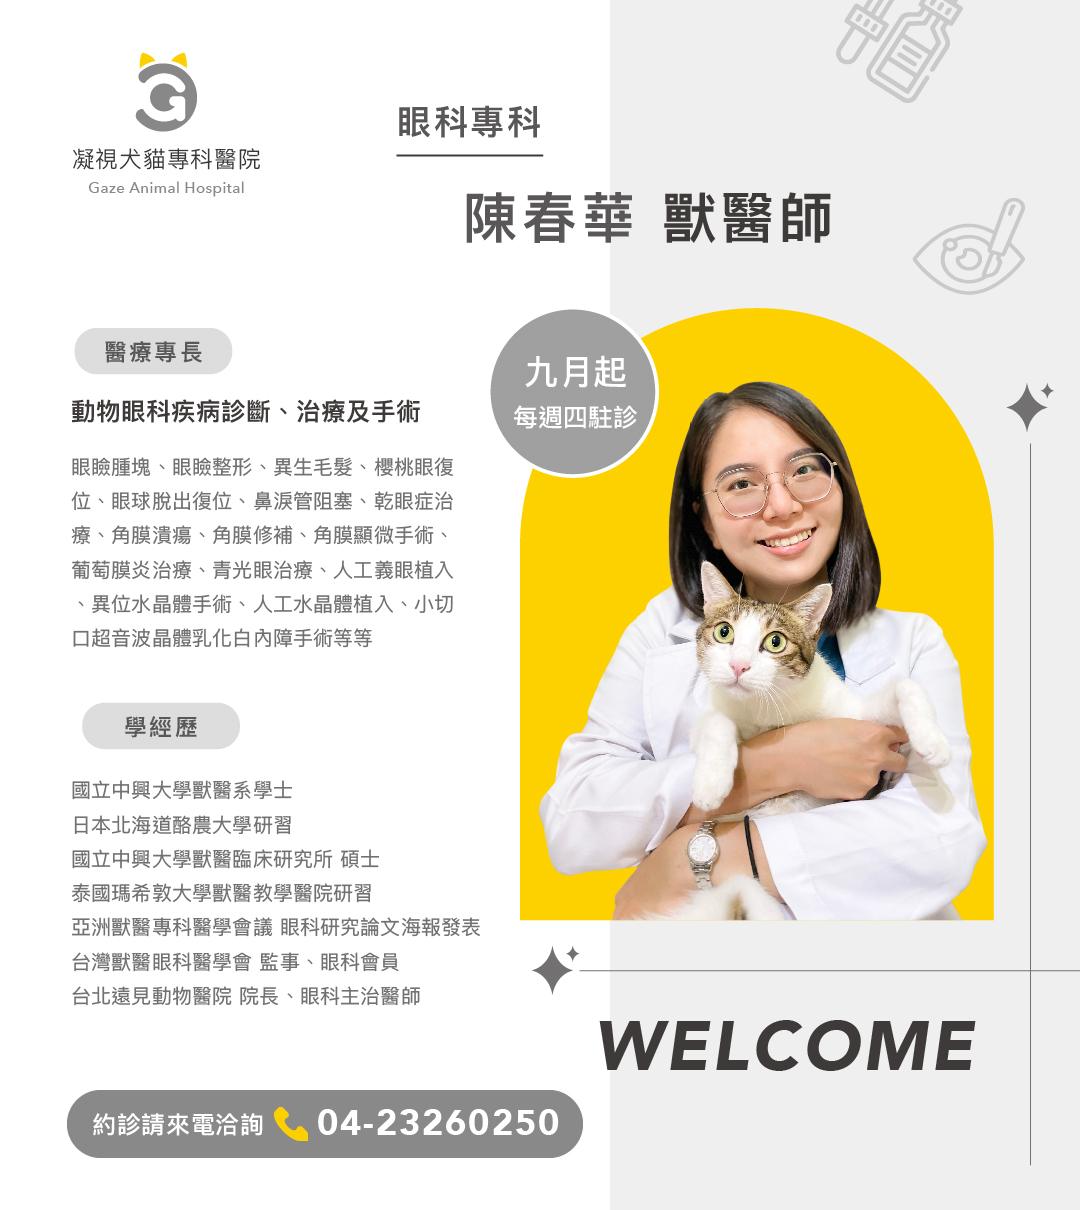 凝視犬貓專科醫院陳春華醫師